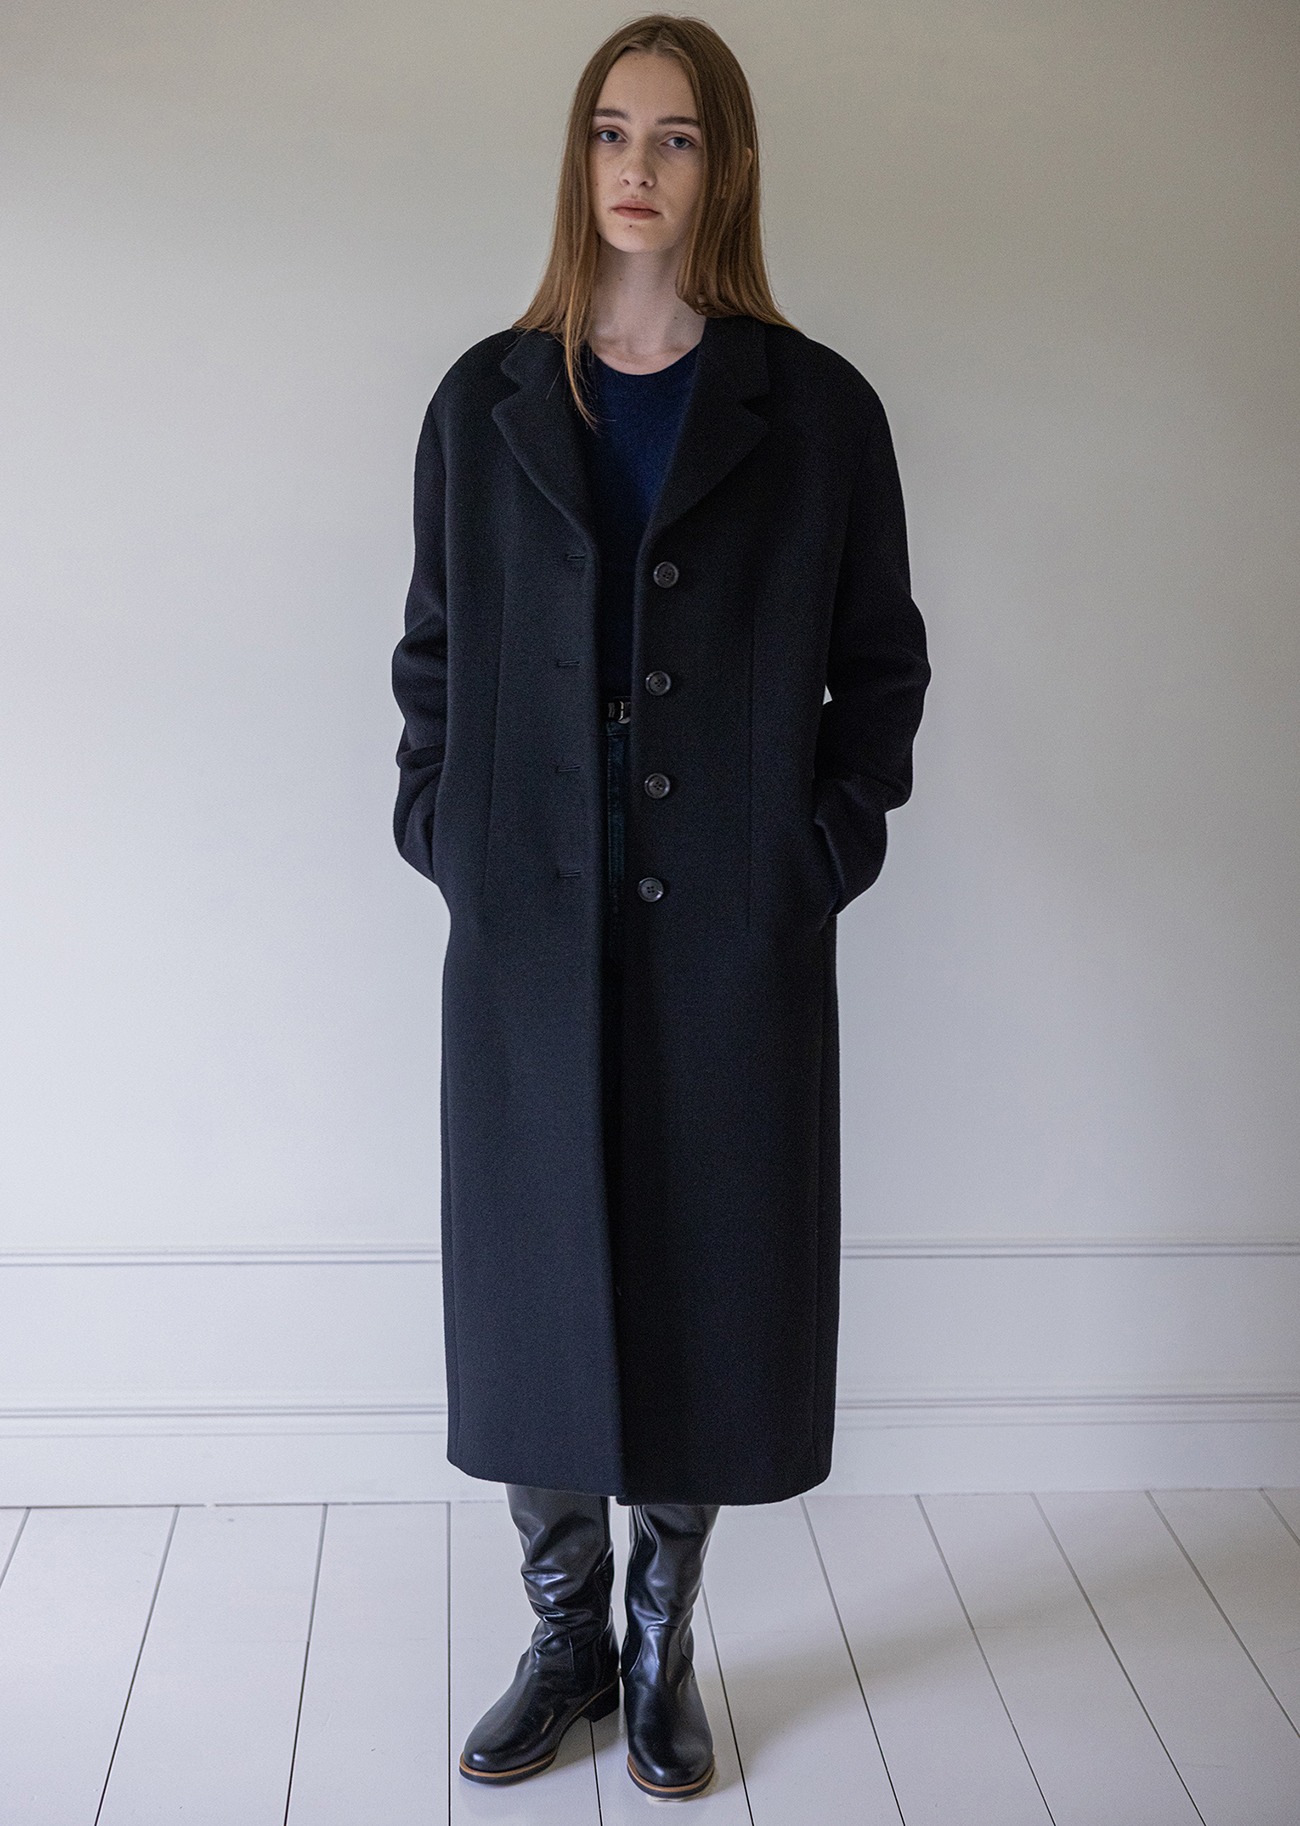 [Re-Order]Single breasted cashmere blend coat - Black